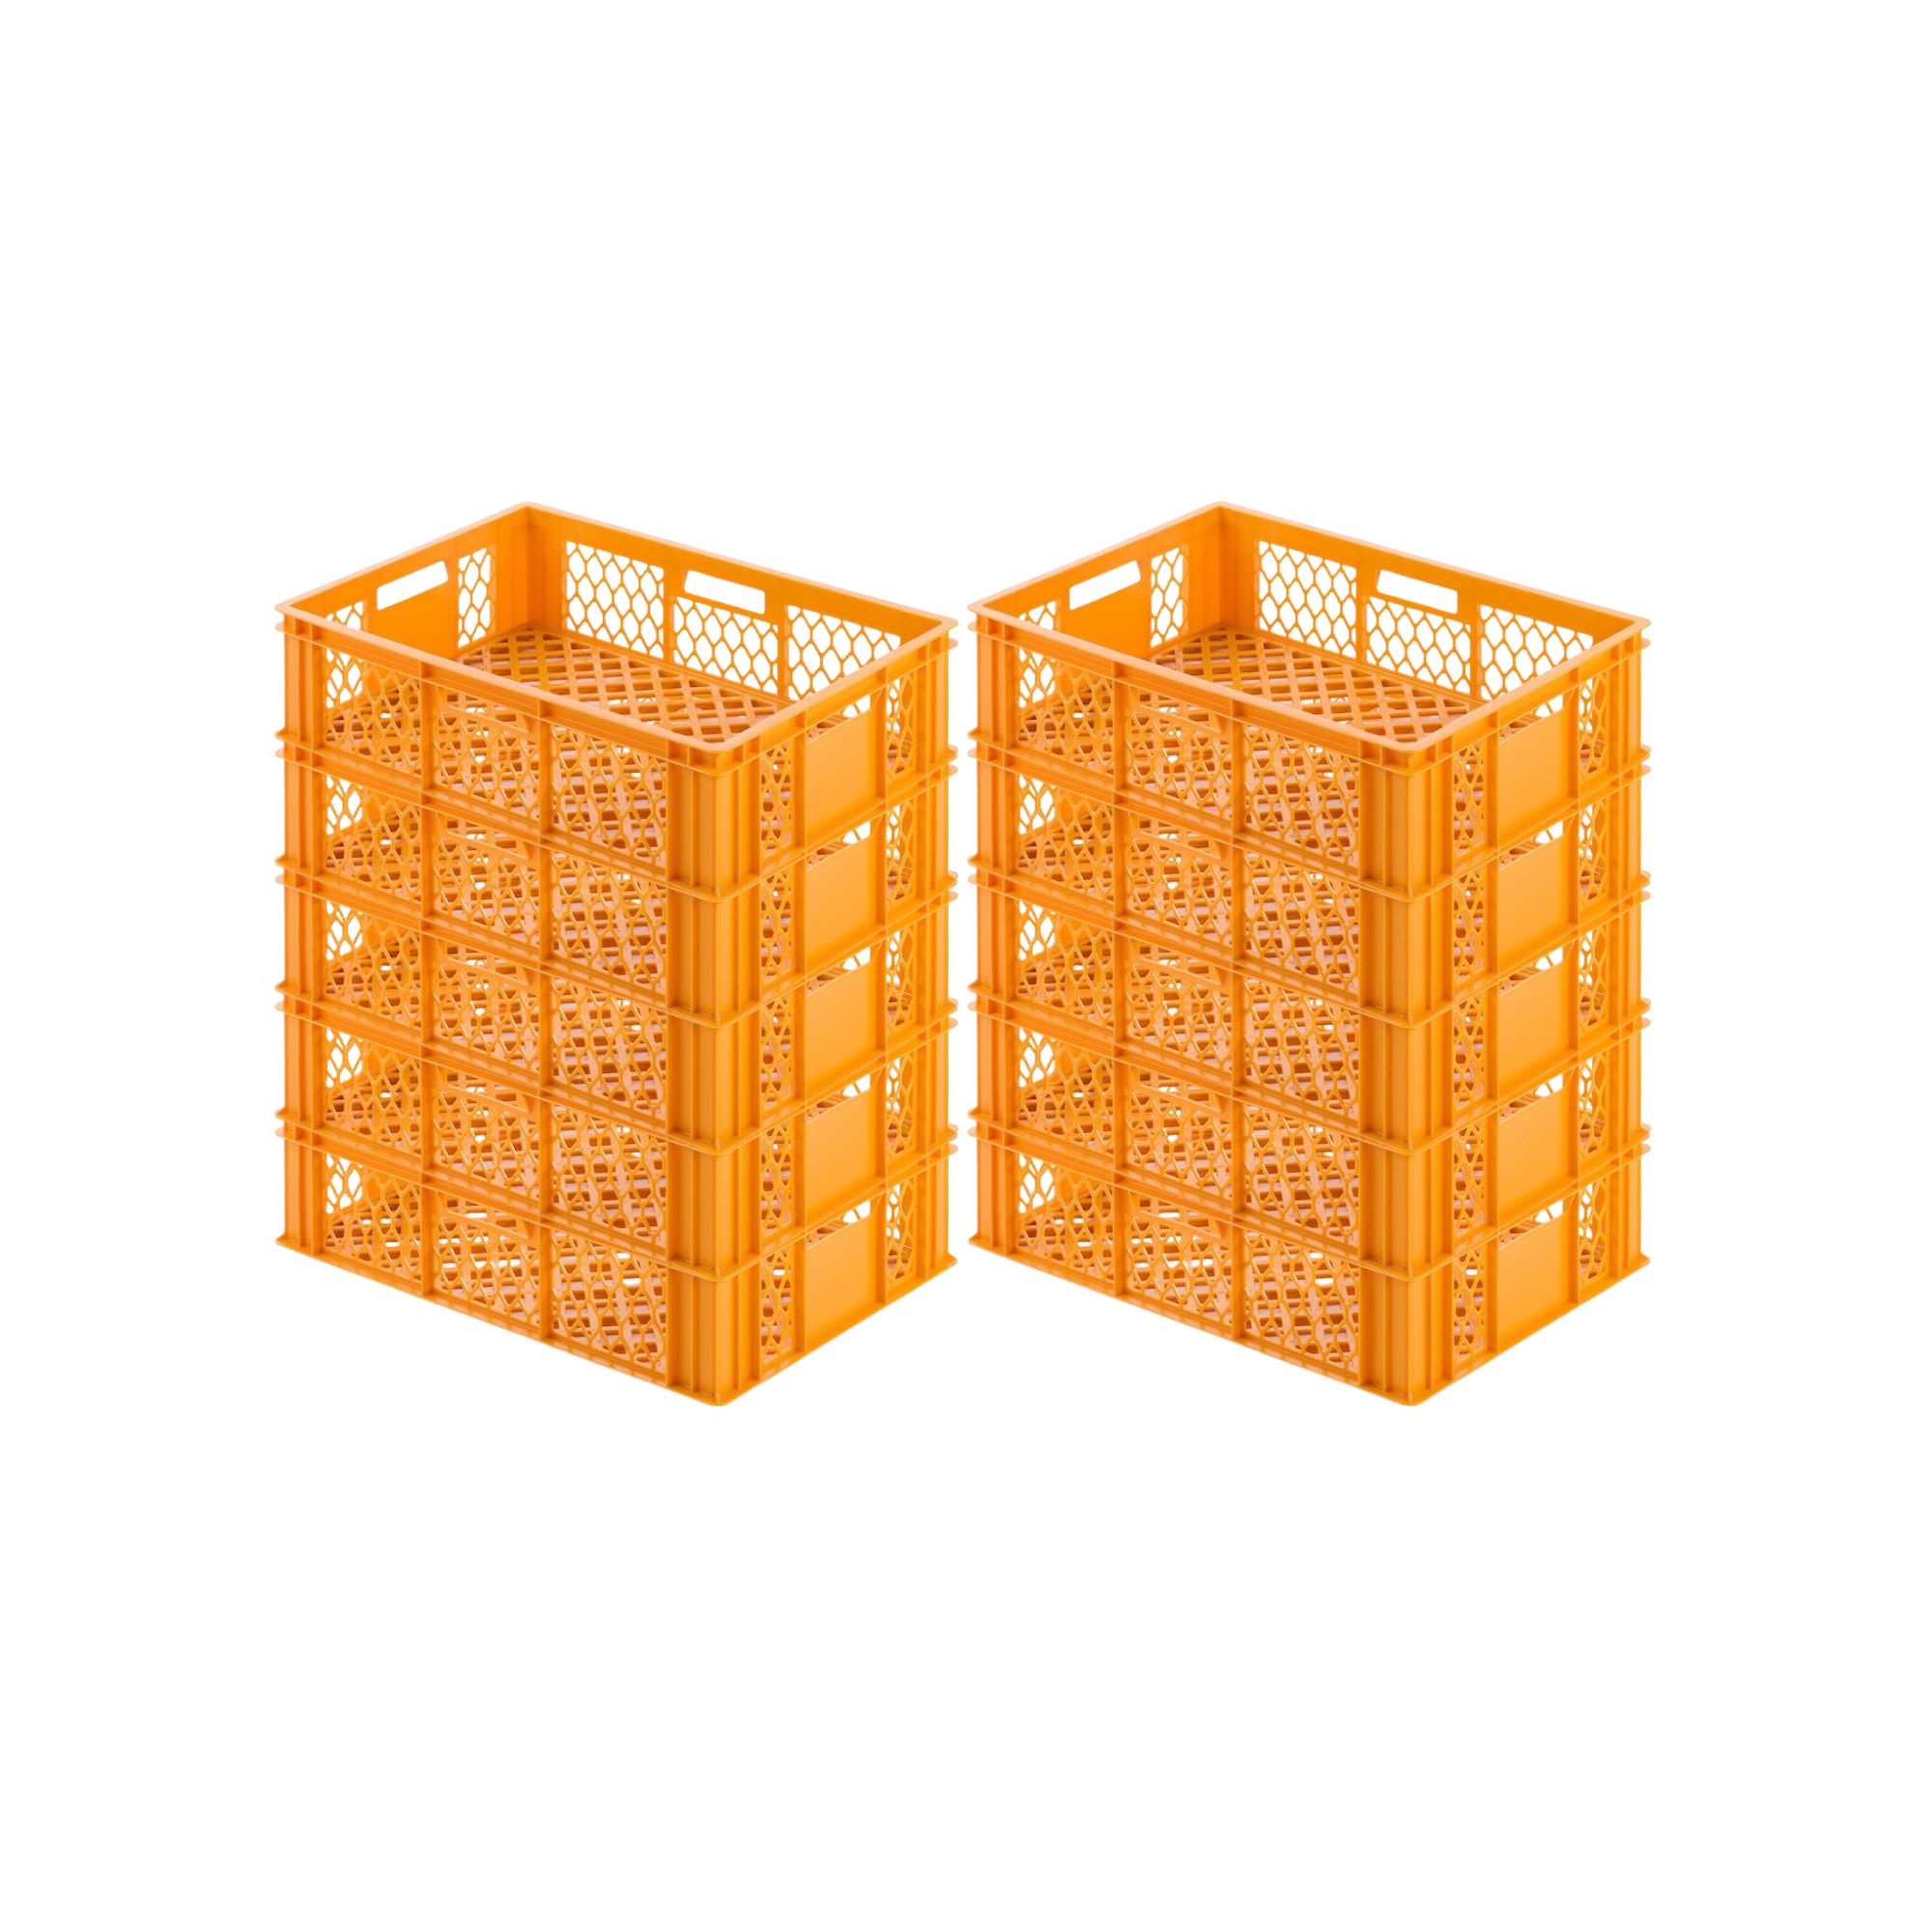 Eurobehälter Bäcker- & Konditorenkasten | HxBxT 17,1x40x60 | 33 Liter | Gelb-Orange | Brötchenkiste, stapelbare Bäckerkiste